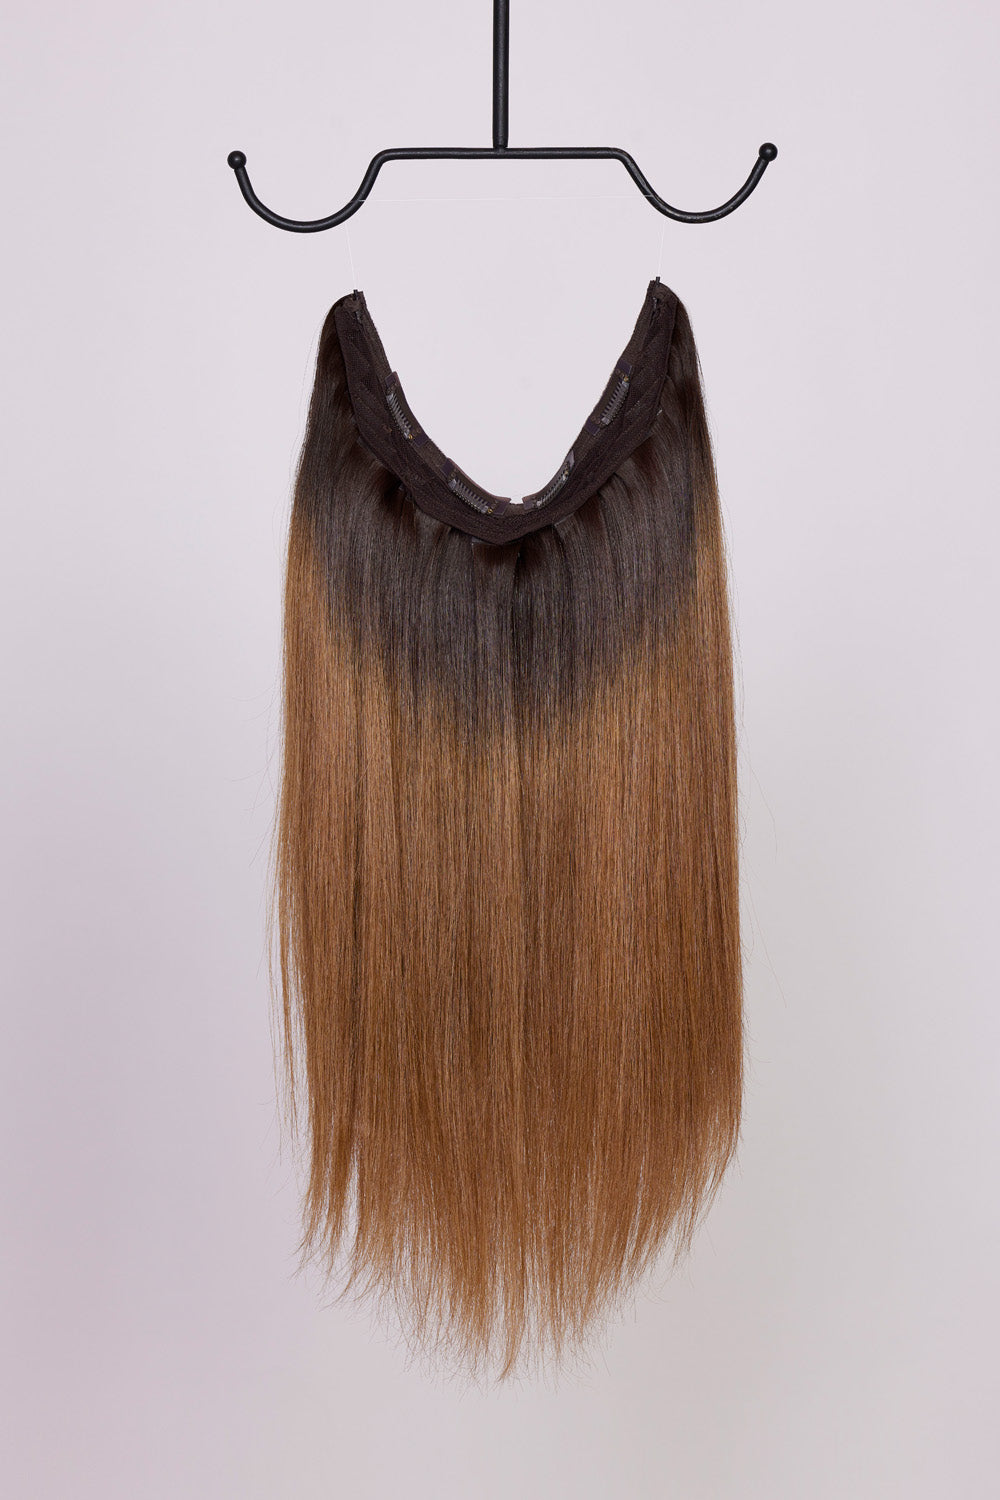 BHBD Hårband: Brun med mörkare rötter, 40 cm långt. 100% äkta Remy hår. Kan användas som clip-on, halo eller ponytail